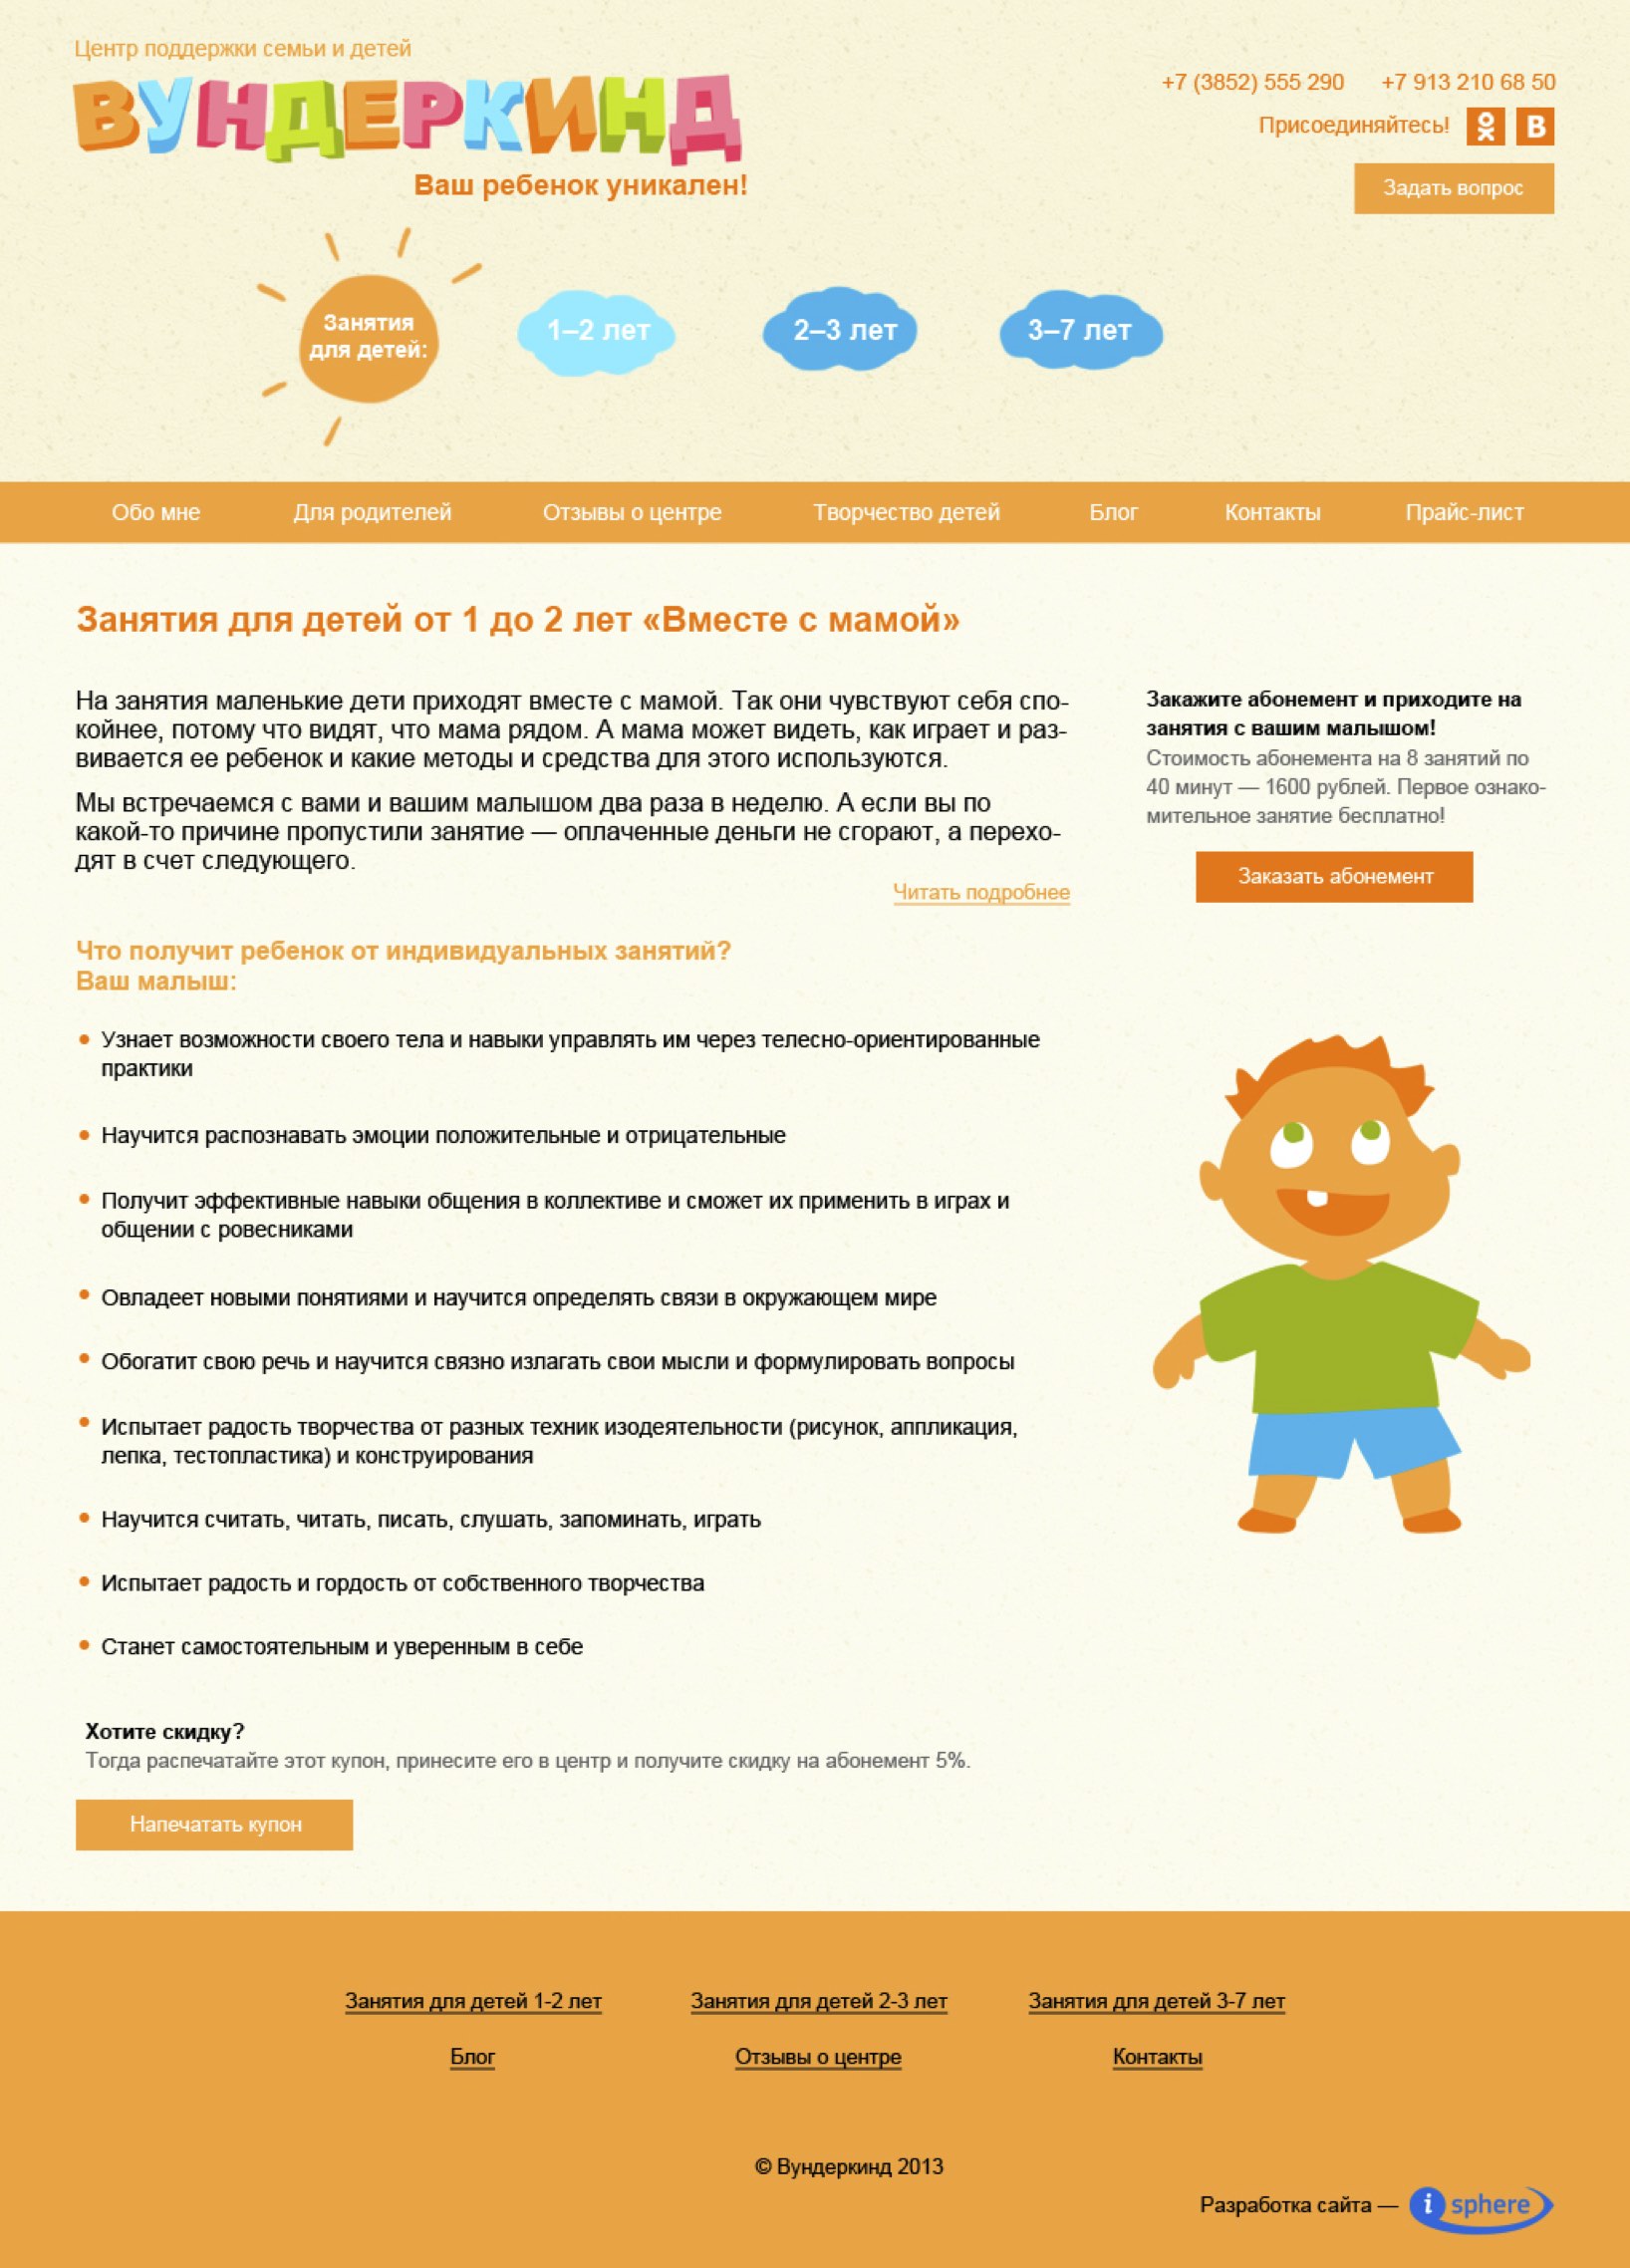 Сайт центра поддержки детей и семьи «Вундеркинд», пример 3